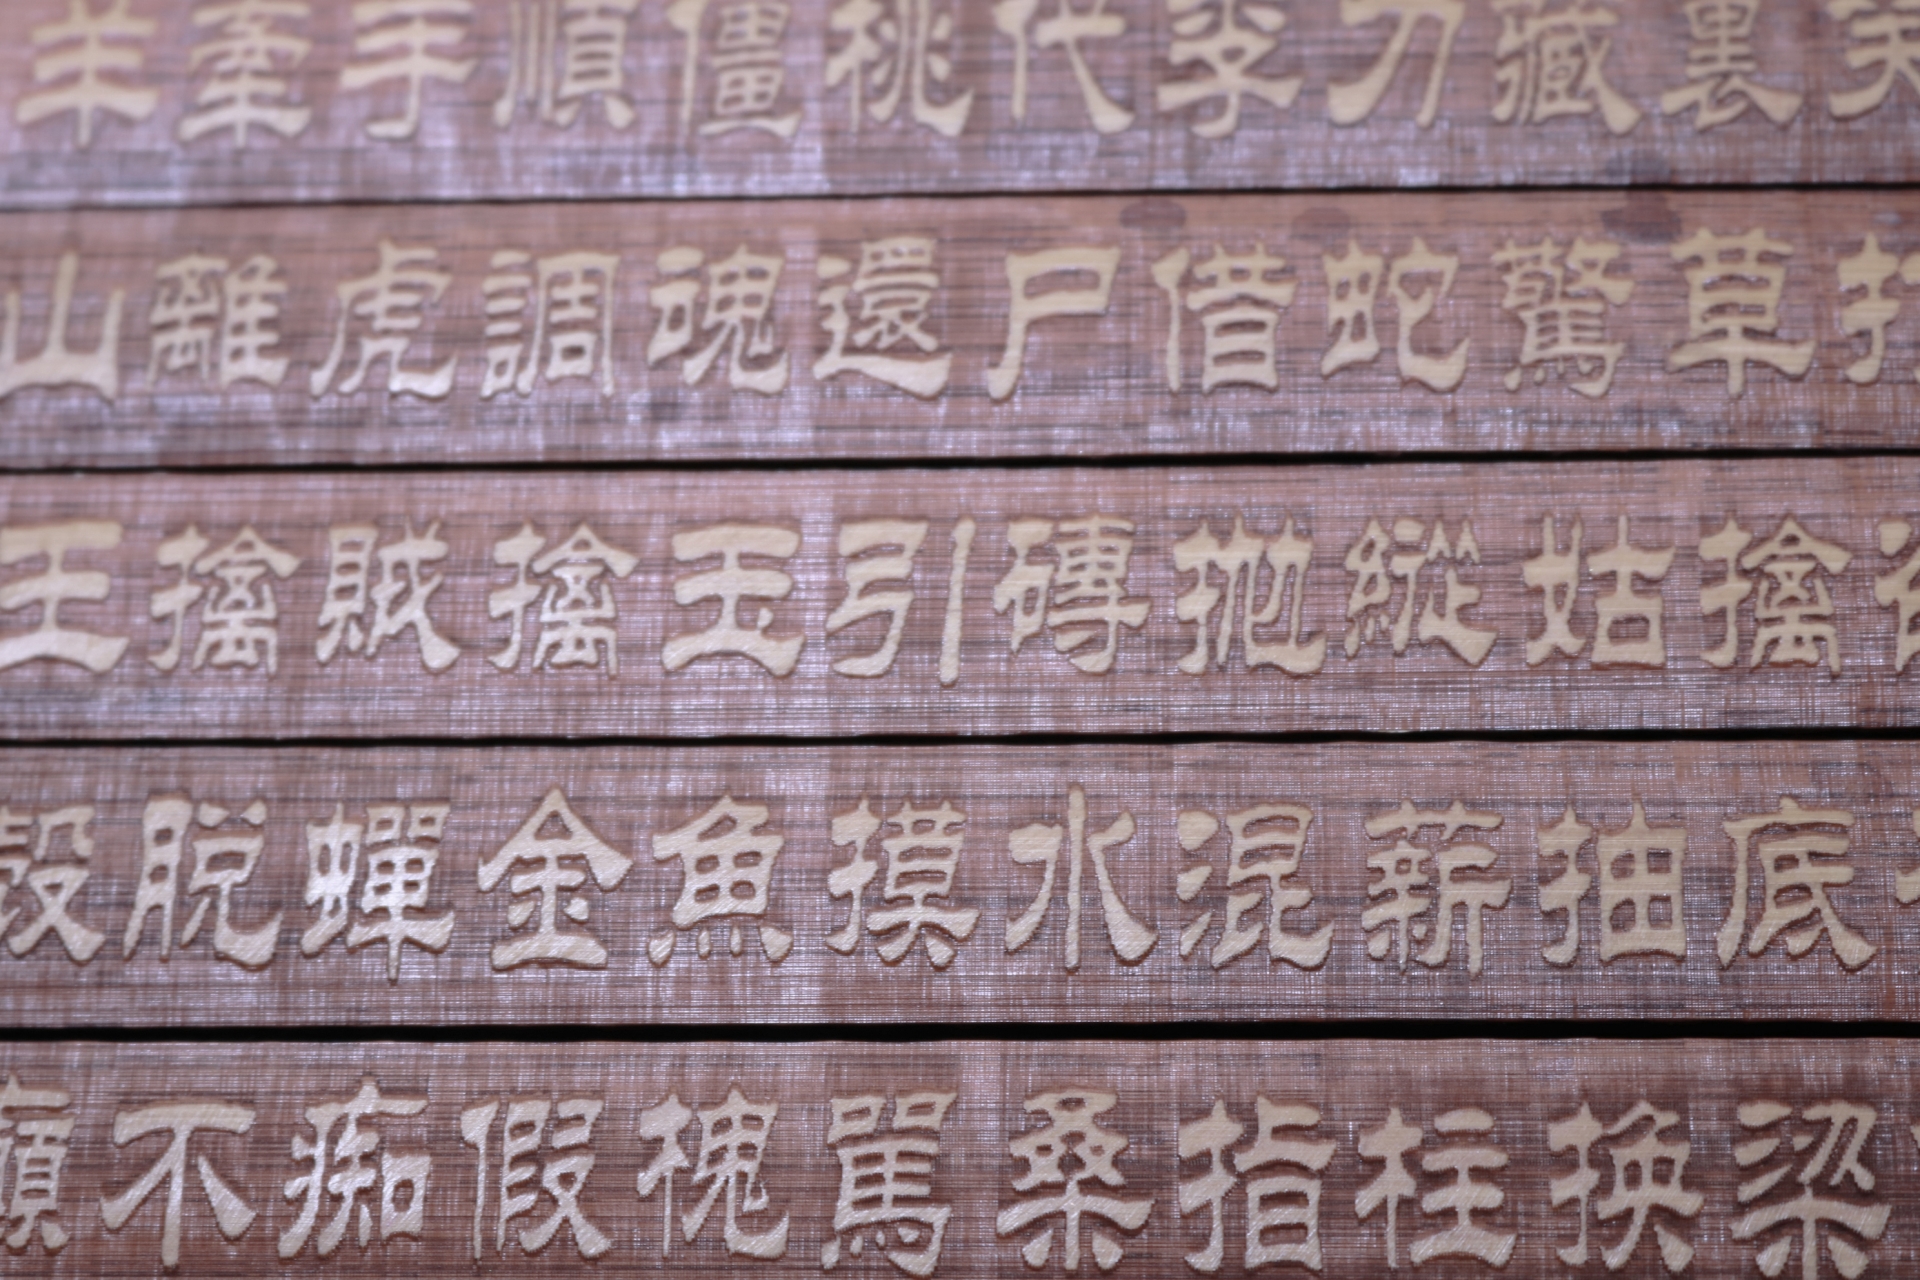 漢字について　漢字の由来と中国大陸の国々　中国語と日本語について